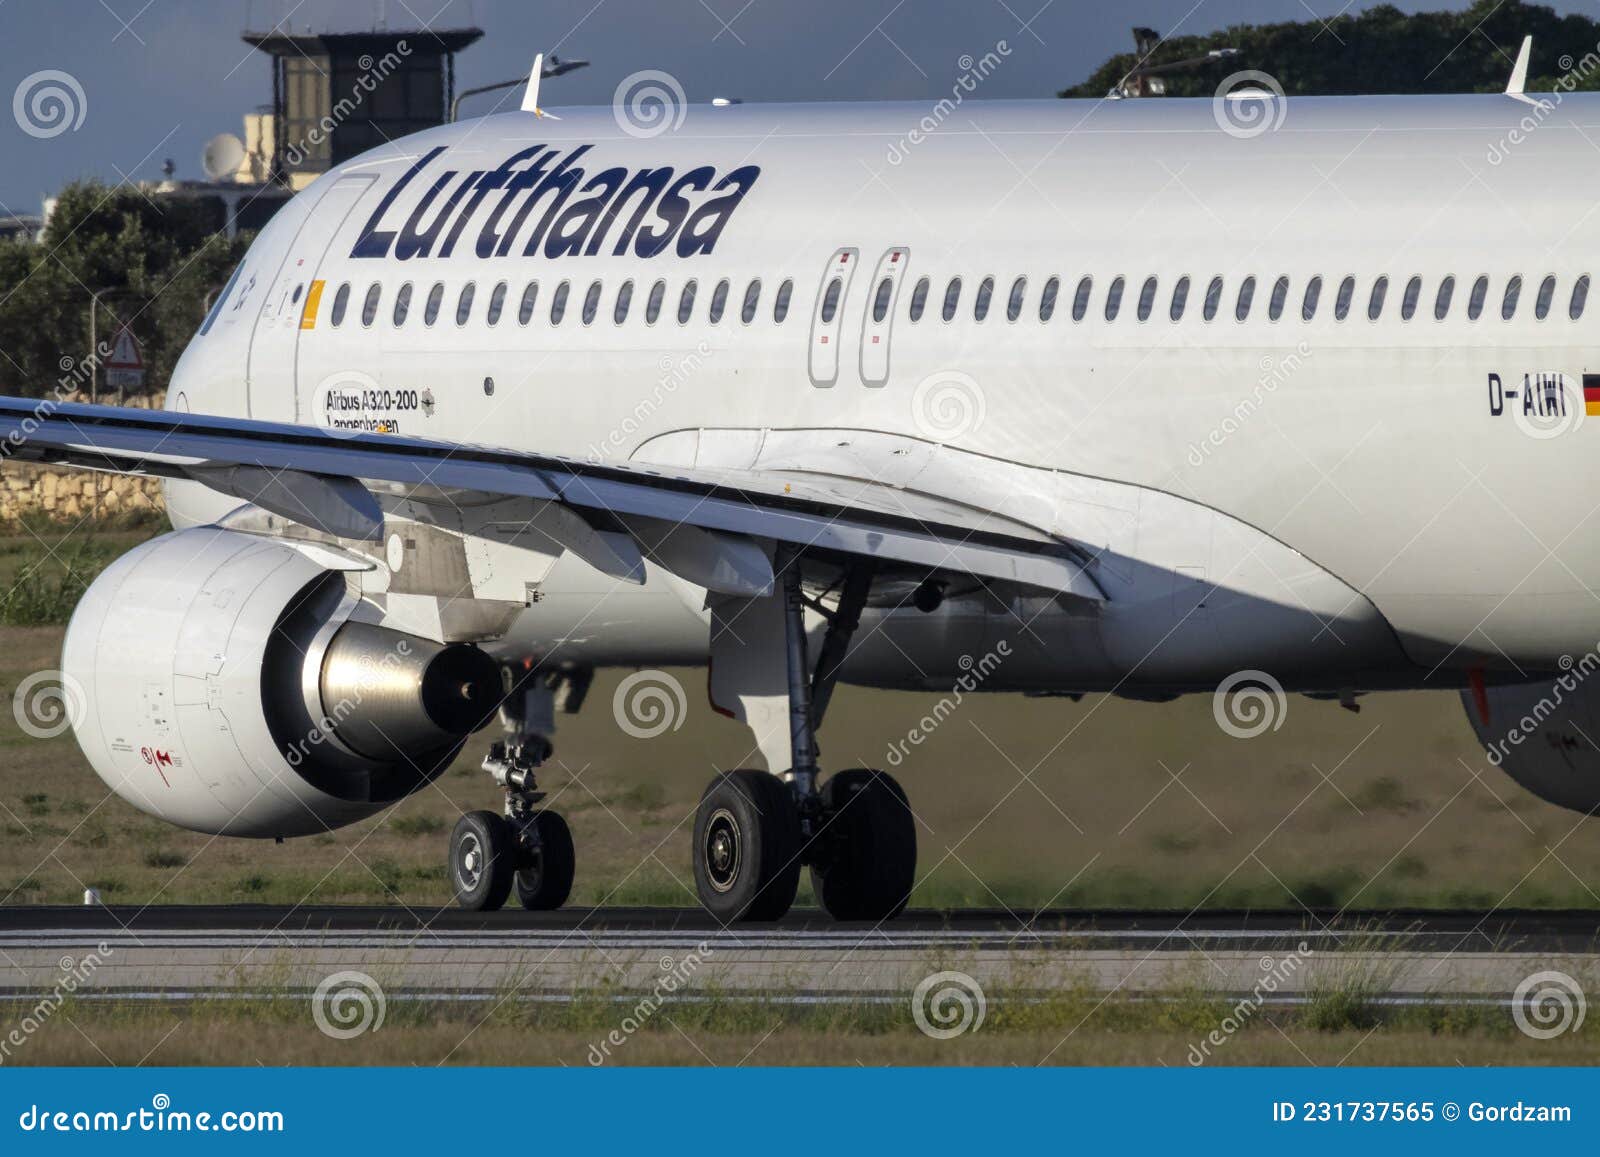 D-AIZE - Lufthansa Airbus A320 at Munich